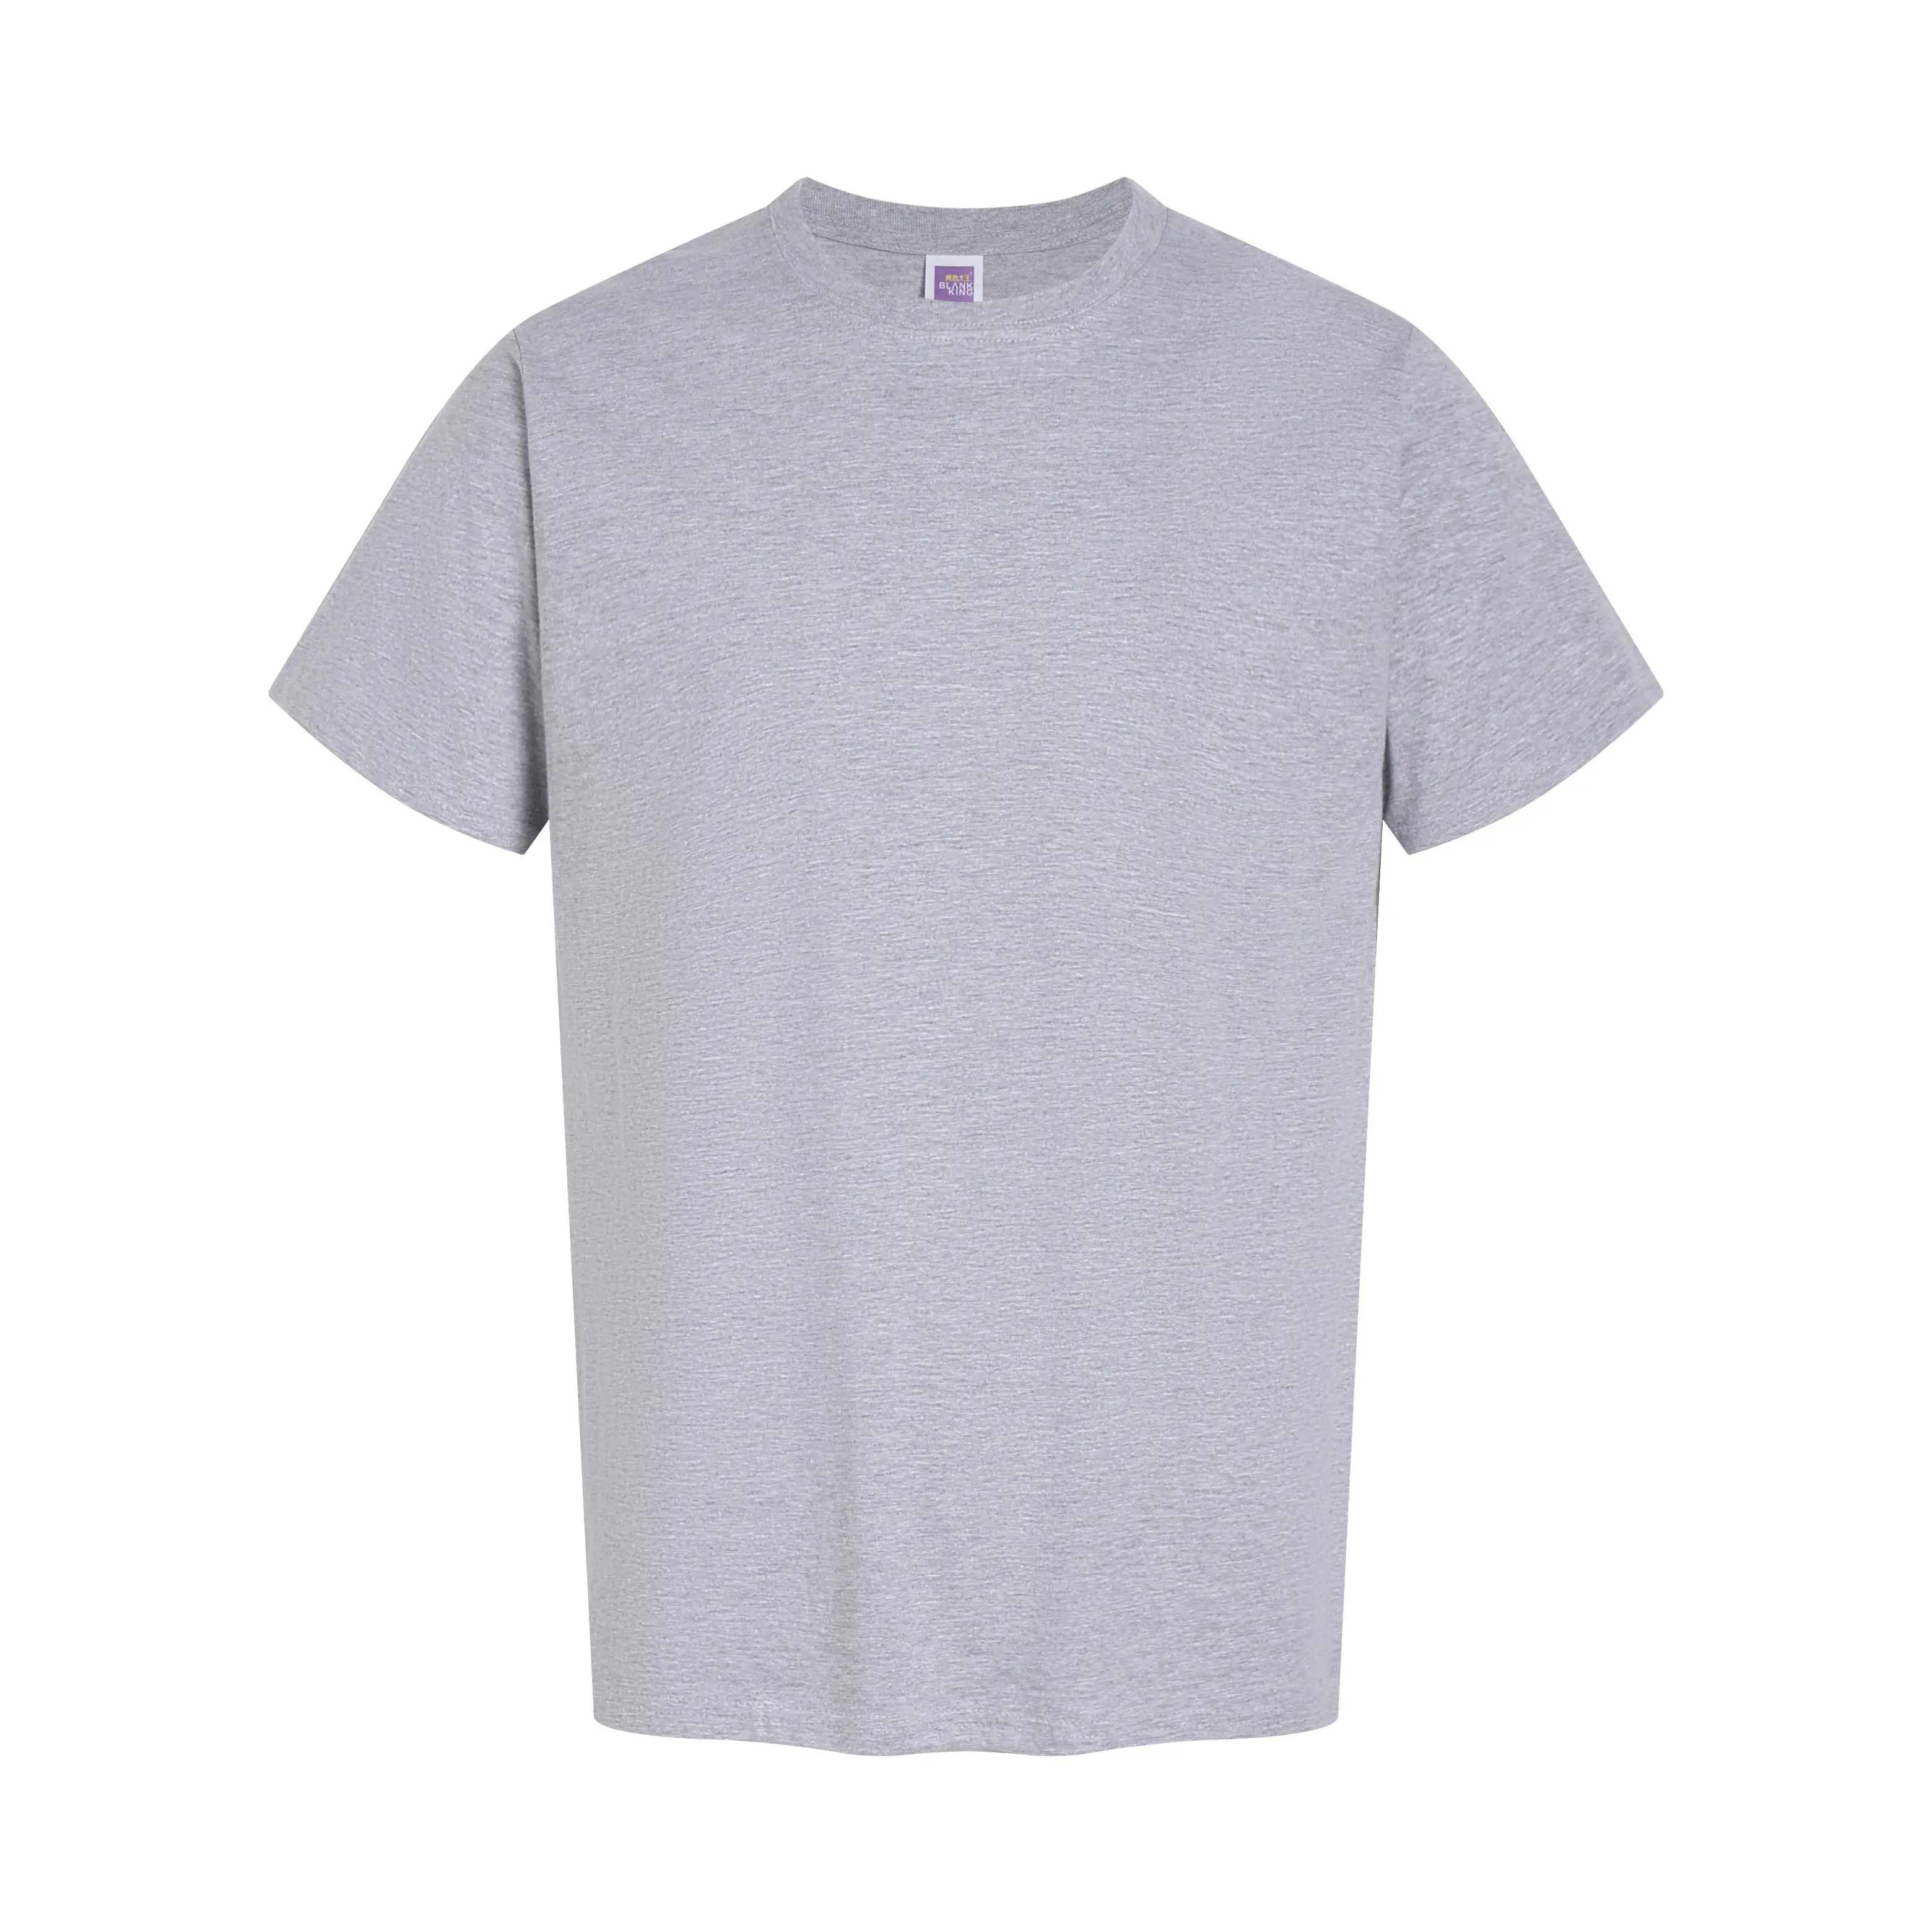 カスタムロゴTシャツ綿100% 特大Tシャツ男性用ラウンドネック半袖Tシャツ